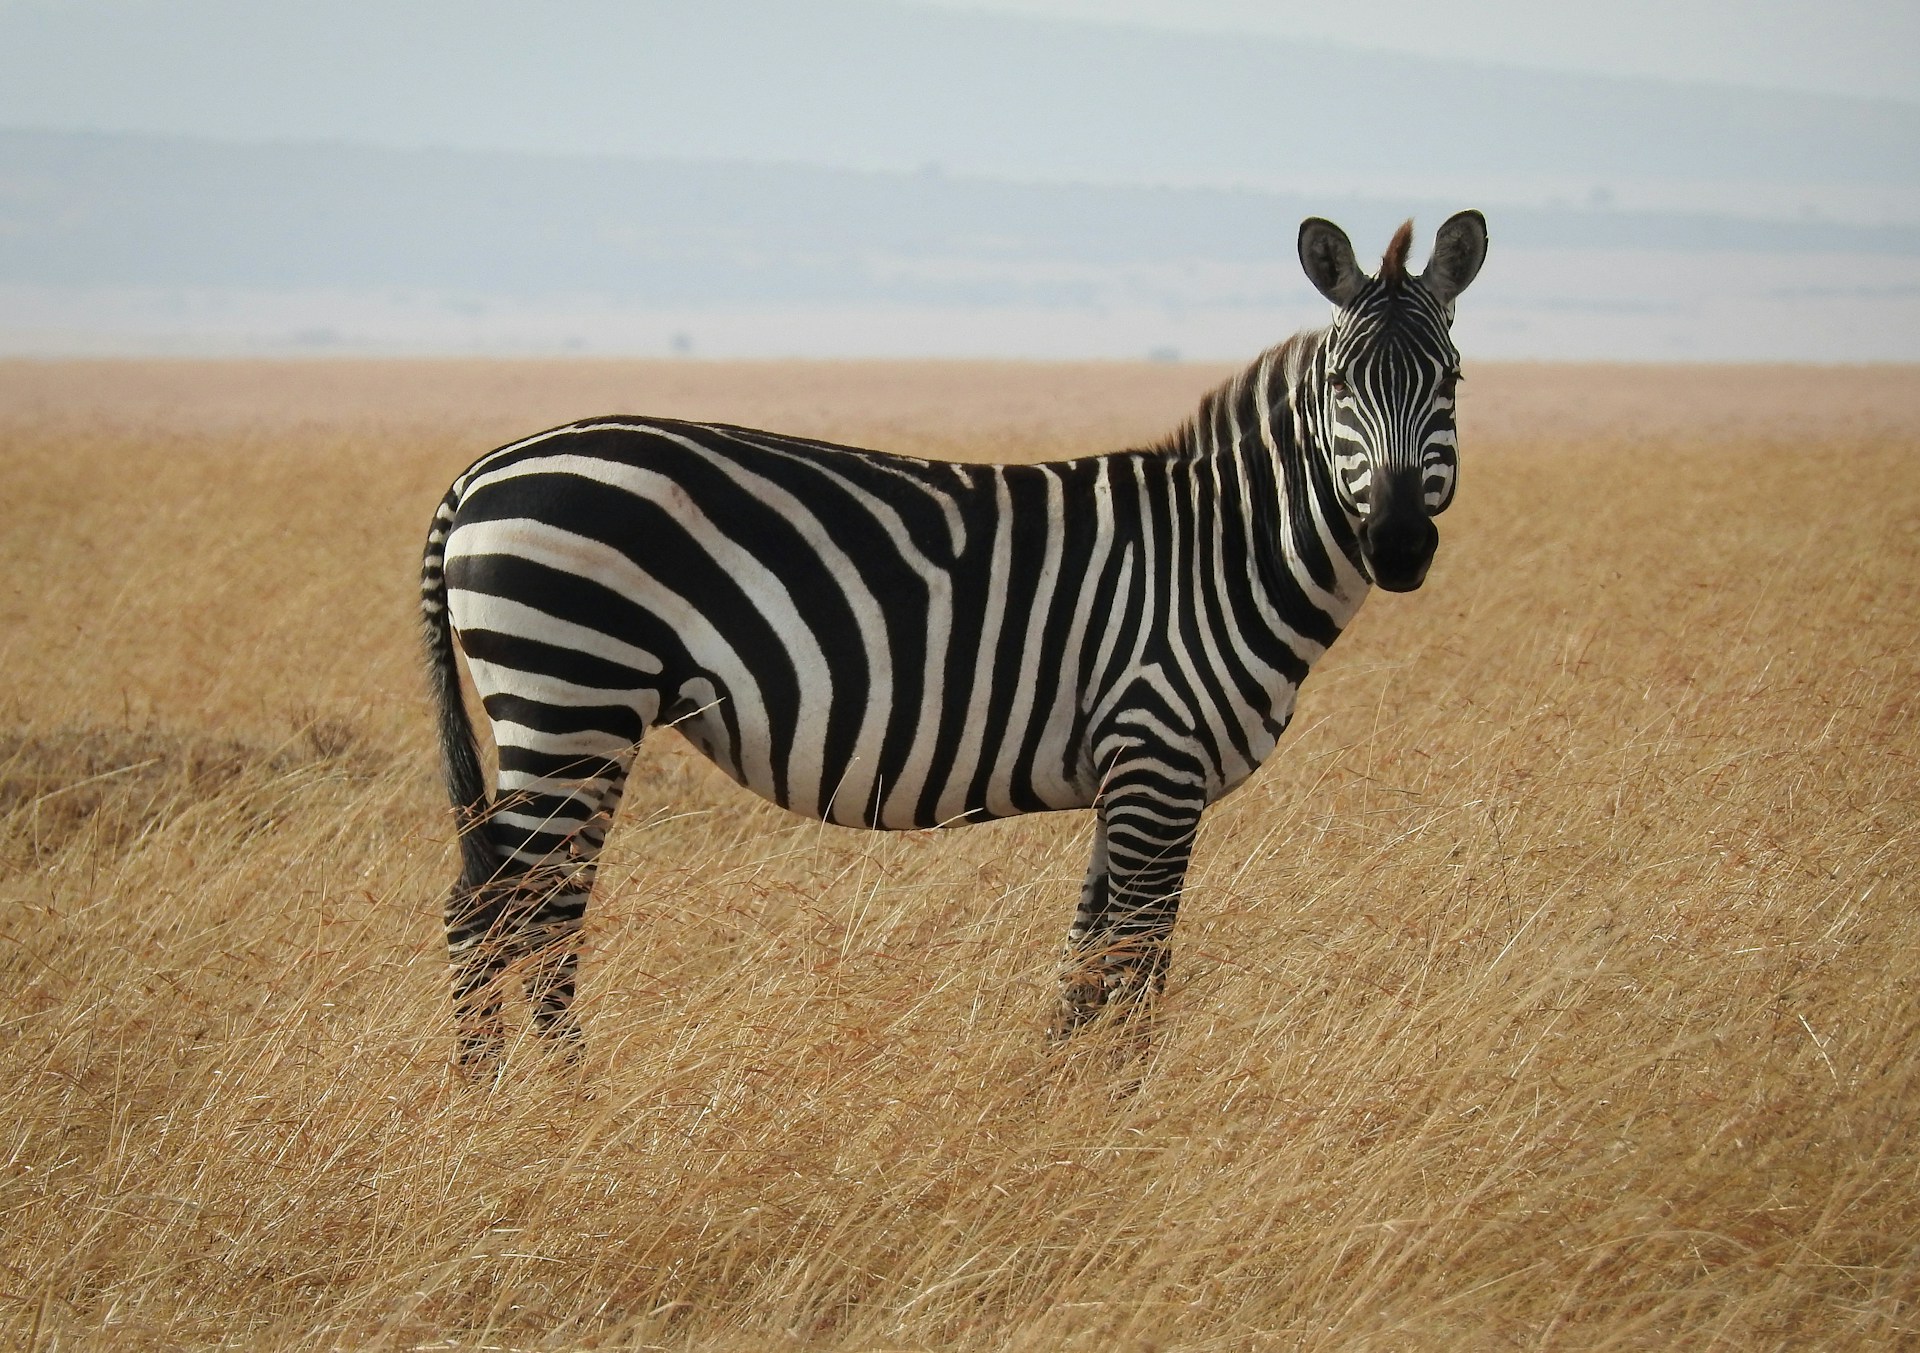 Zebra in a savanna